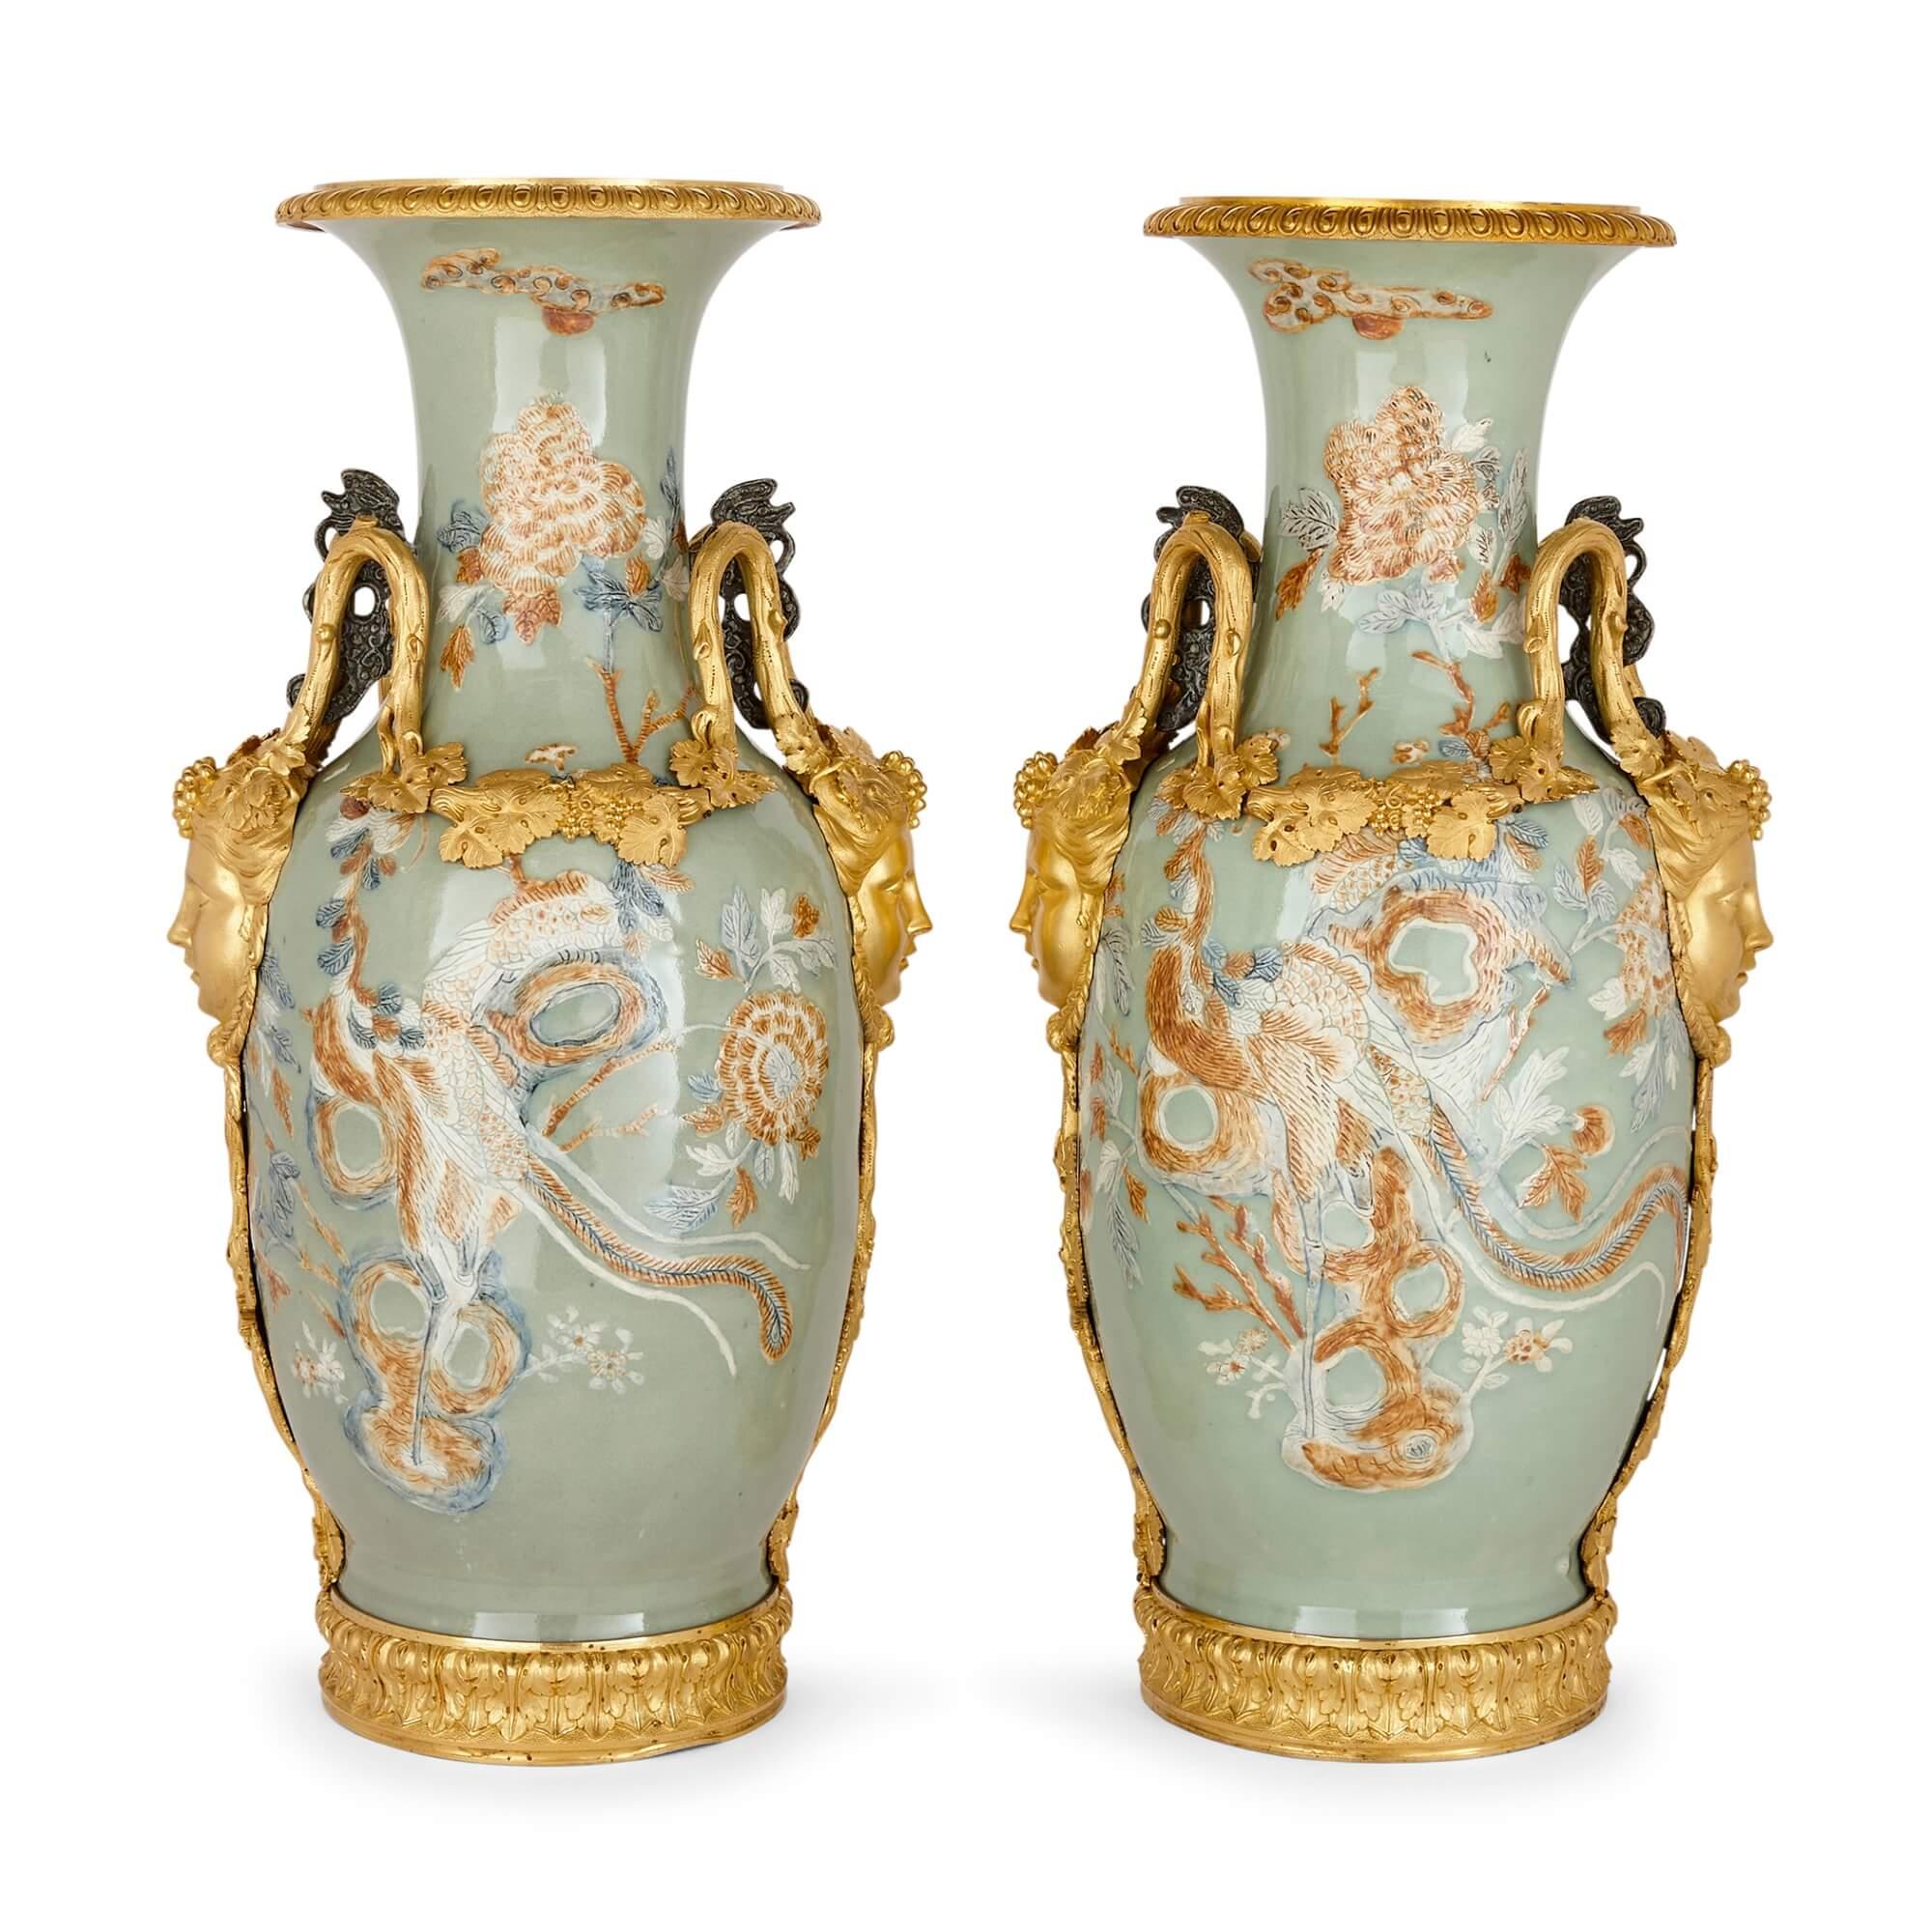 Paire de grands vases en porcelaine de Chine avec montures en bronze doré français
Français, chinois, c.1840
Hauteur 65,5 cm, largeur 32 cm, profondeur 25 cm 

Dans les années 1840, deux formes d'art magistrales ont convergé pour donner naissance à